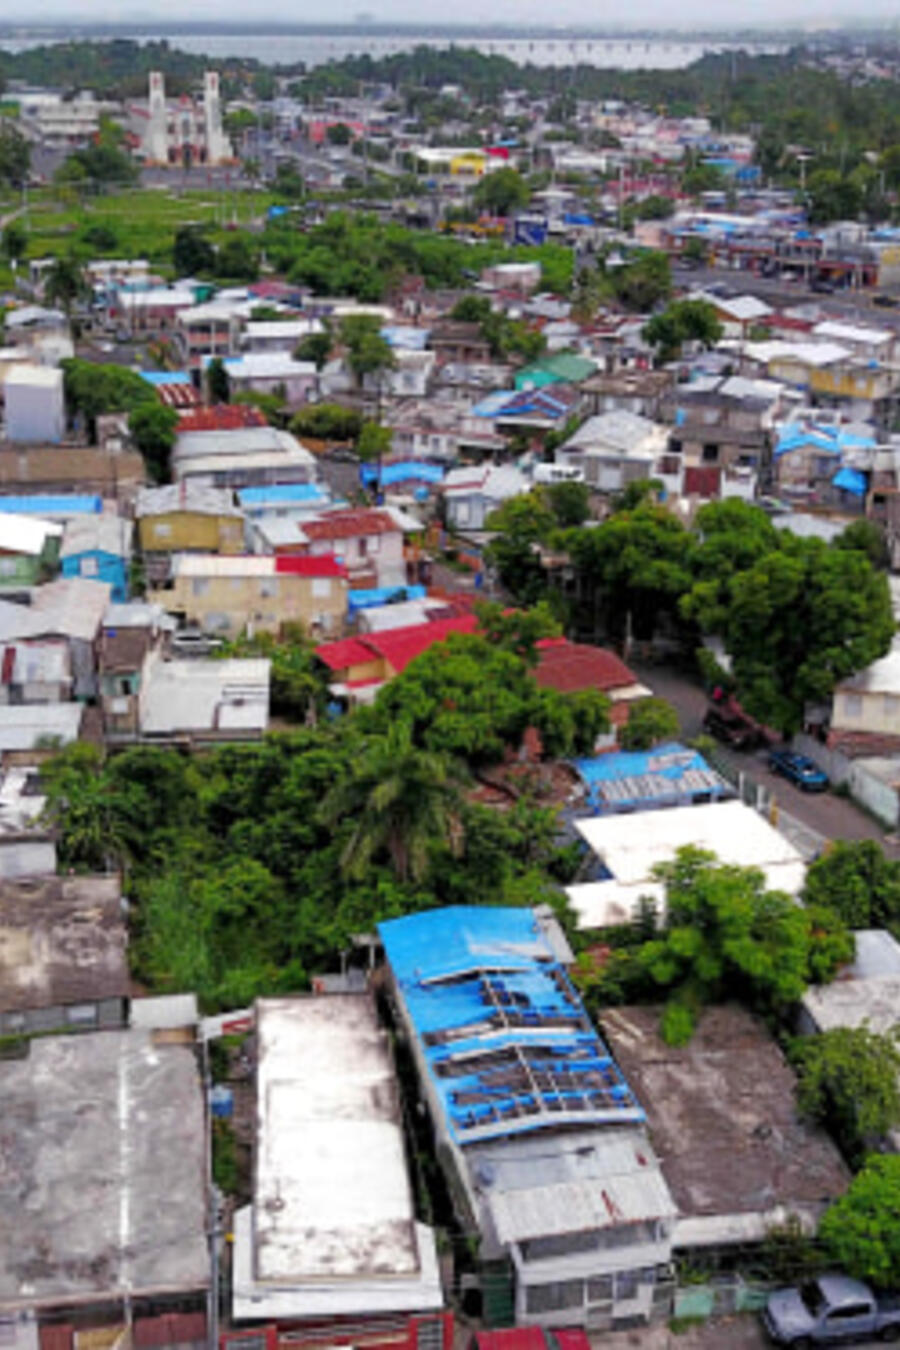 Lonas azules repartidas por FEMA cubren varios techos de viviendas dañadas en Puerto Rico dos años después del huracán María.